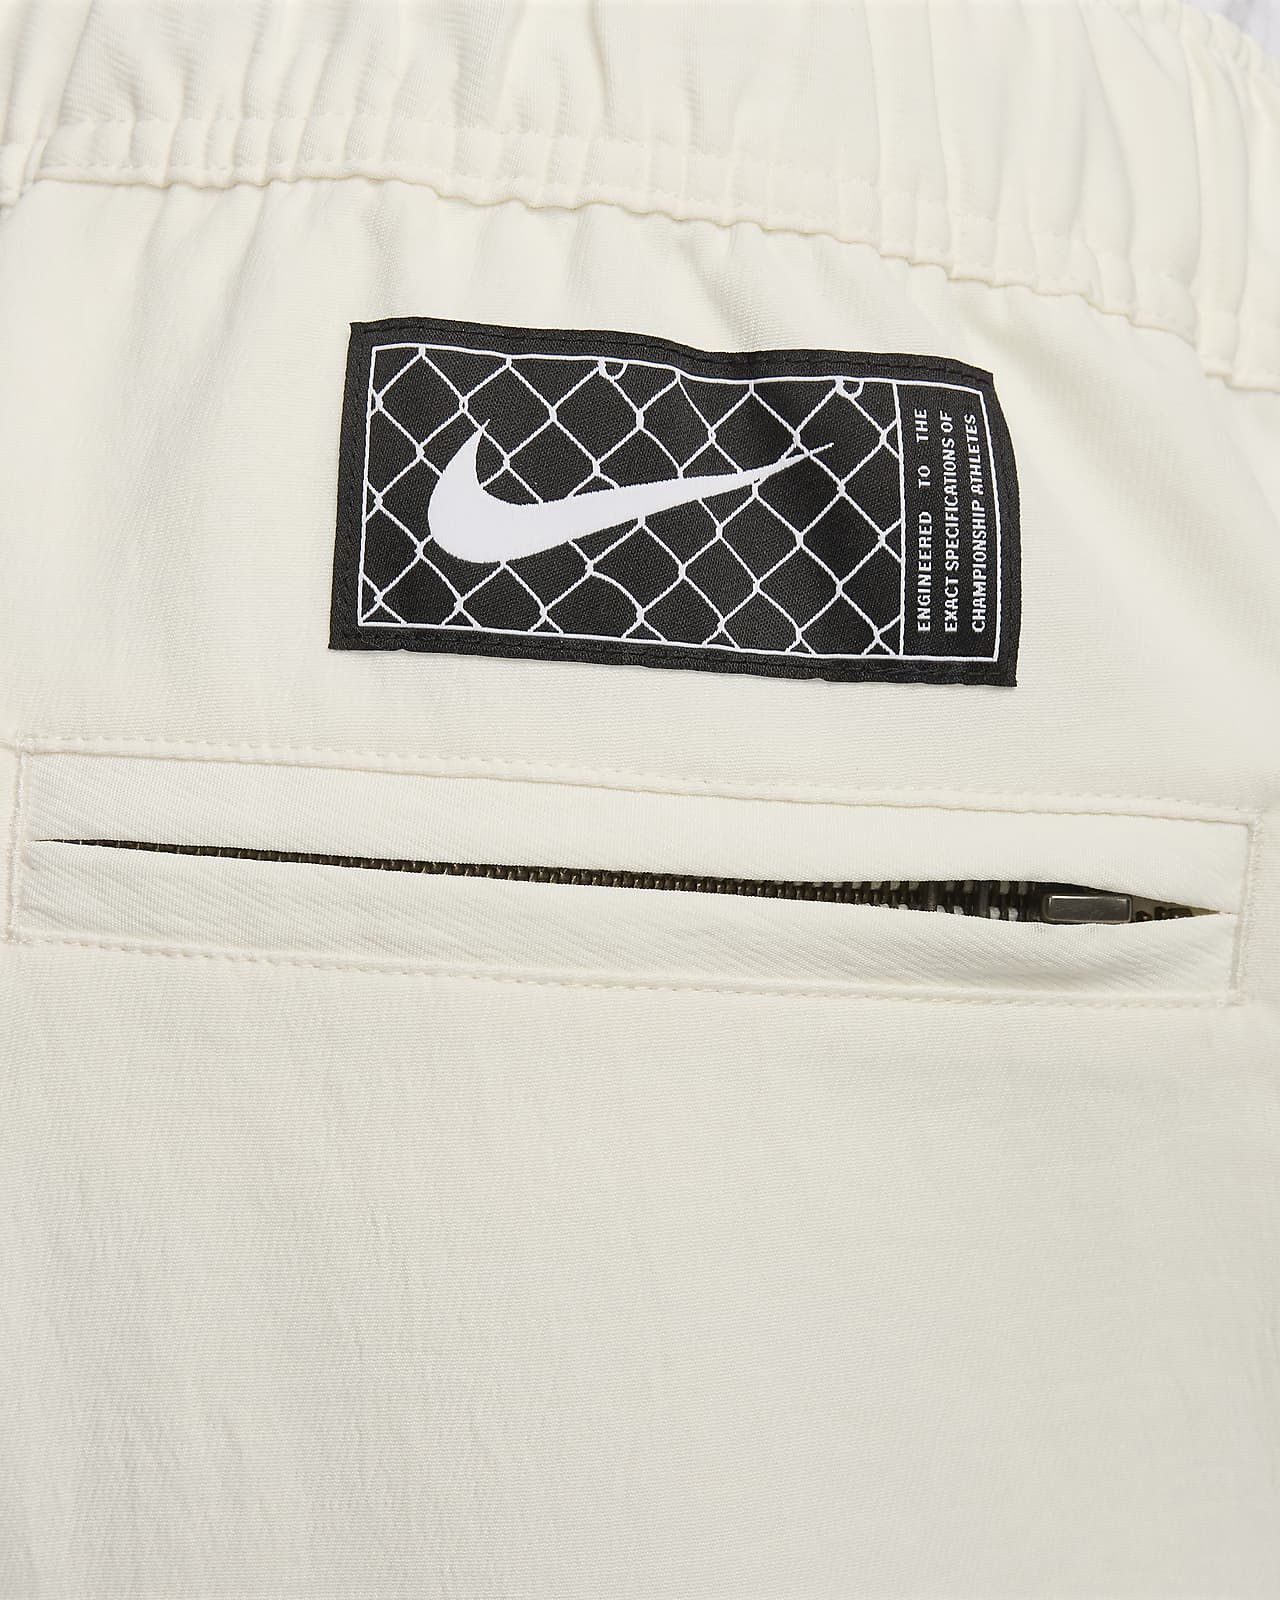 Nike Men's NBA Game Tearaway Button Pants Size XXXL : : Fashion